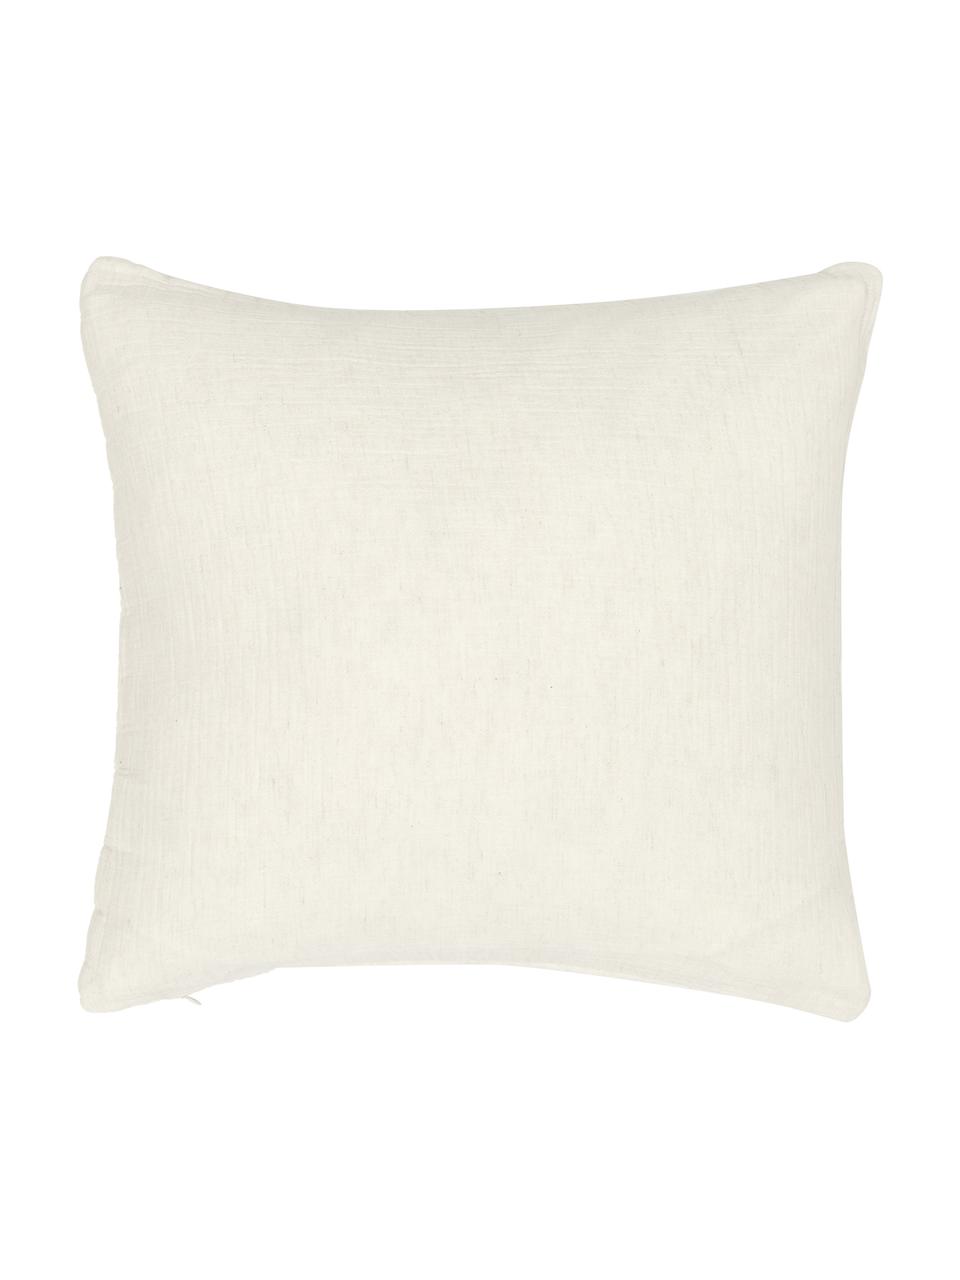 Watowana poszewka na poduszkę z muślinu bawełnianego Lune, 100% bawełna, Beżowy, S 45 x D 45 cm